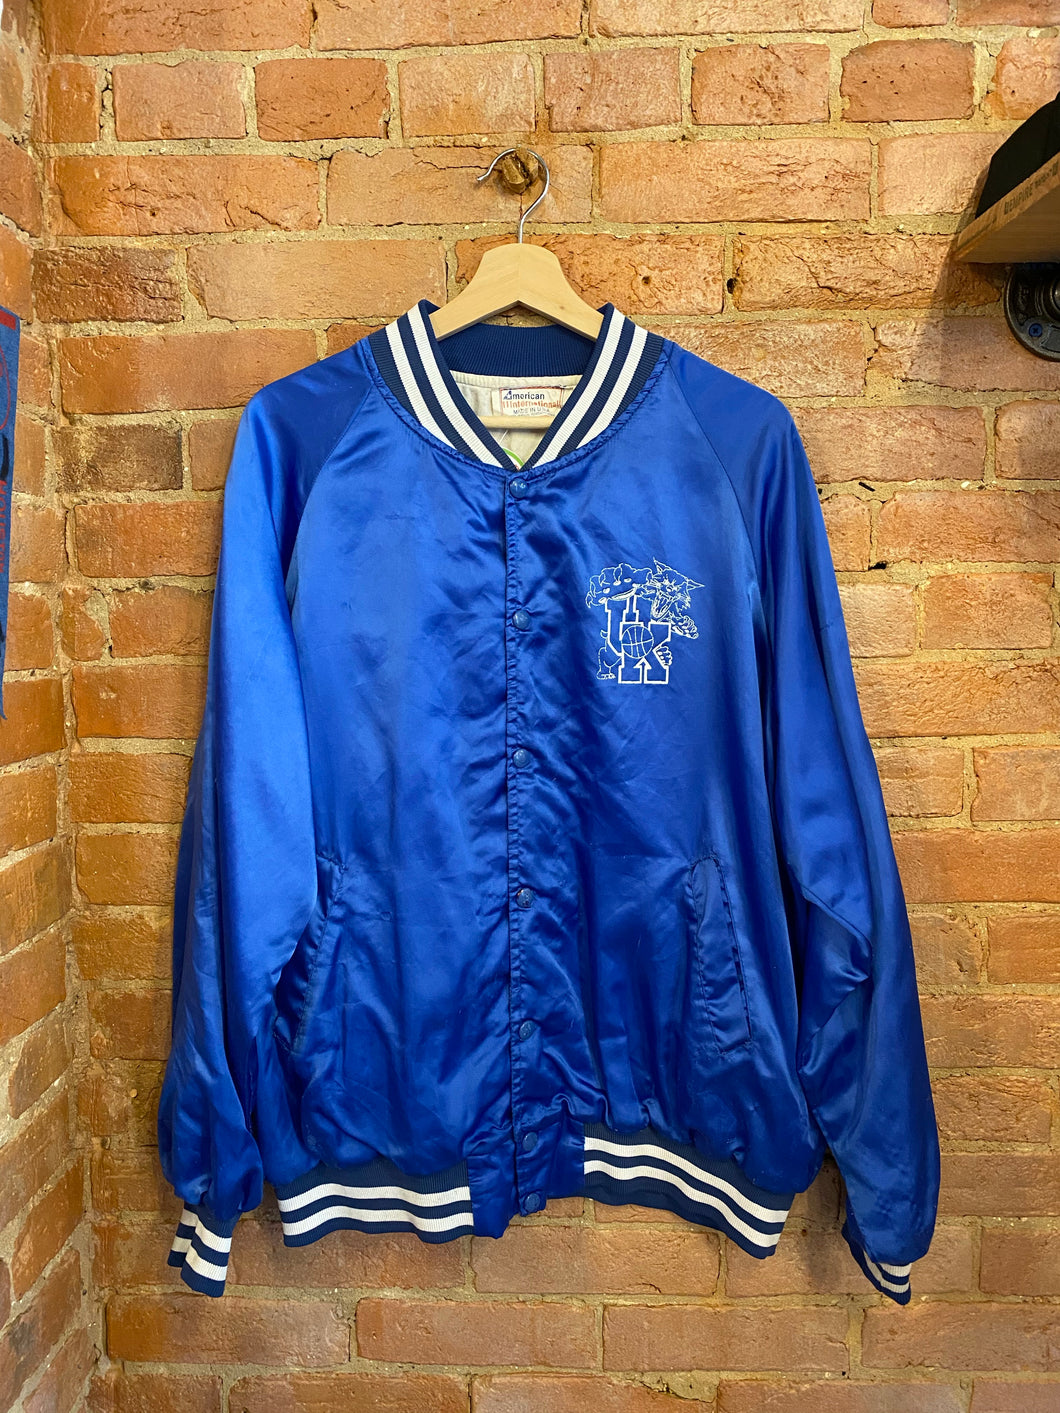 Vintage University of Kentucky Satin Jacket: L/XL